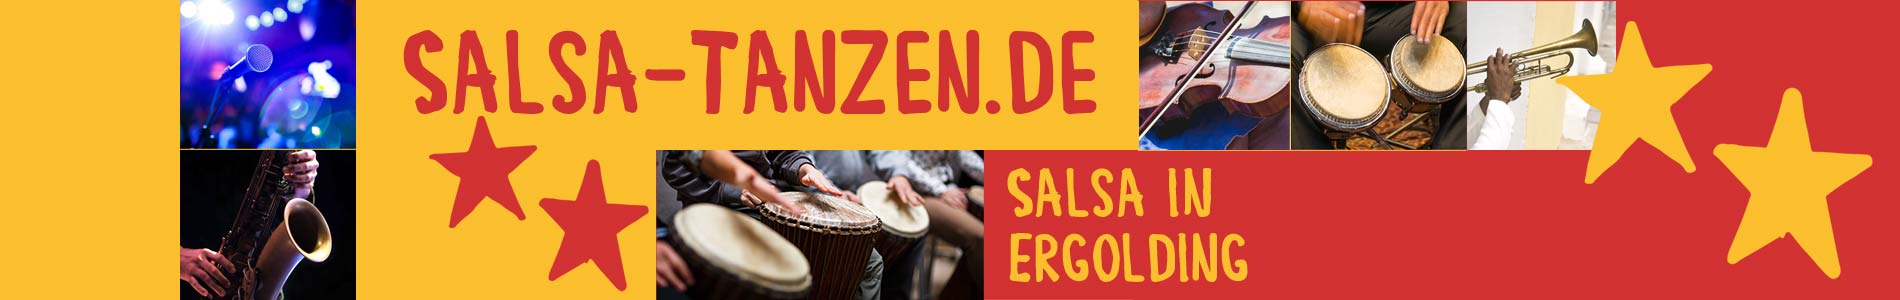 Salsa in Ergolding – Salsa lernen und tanzen, Tanzkurse, Partys, Veranstaltungen